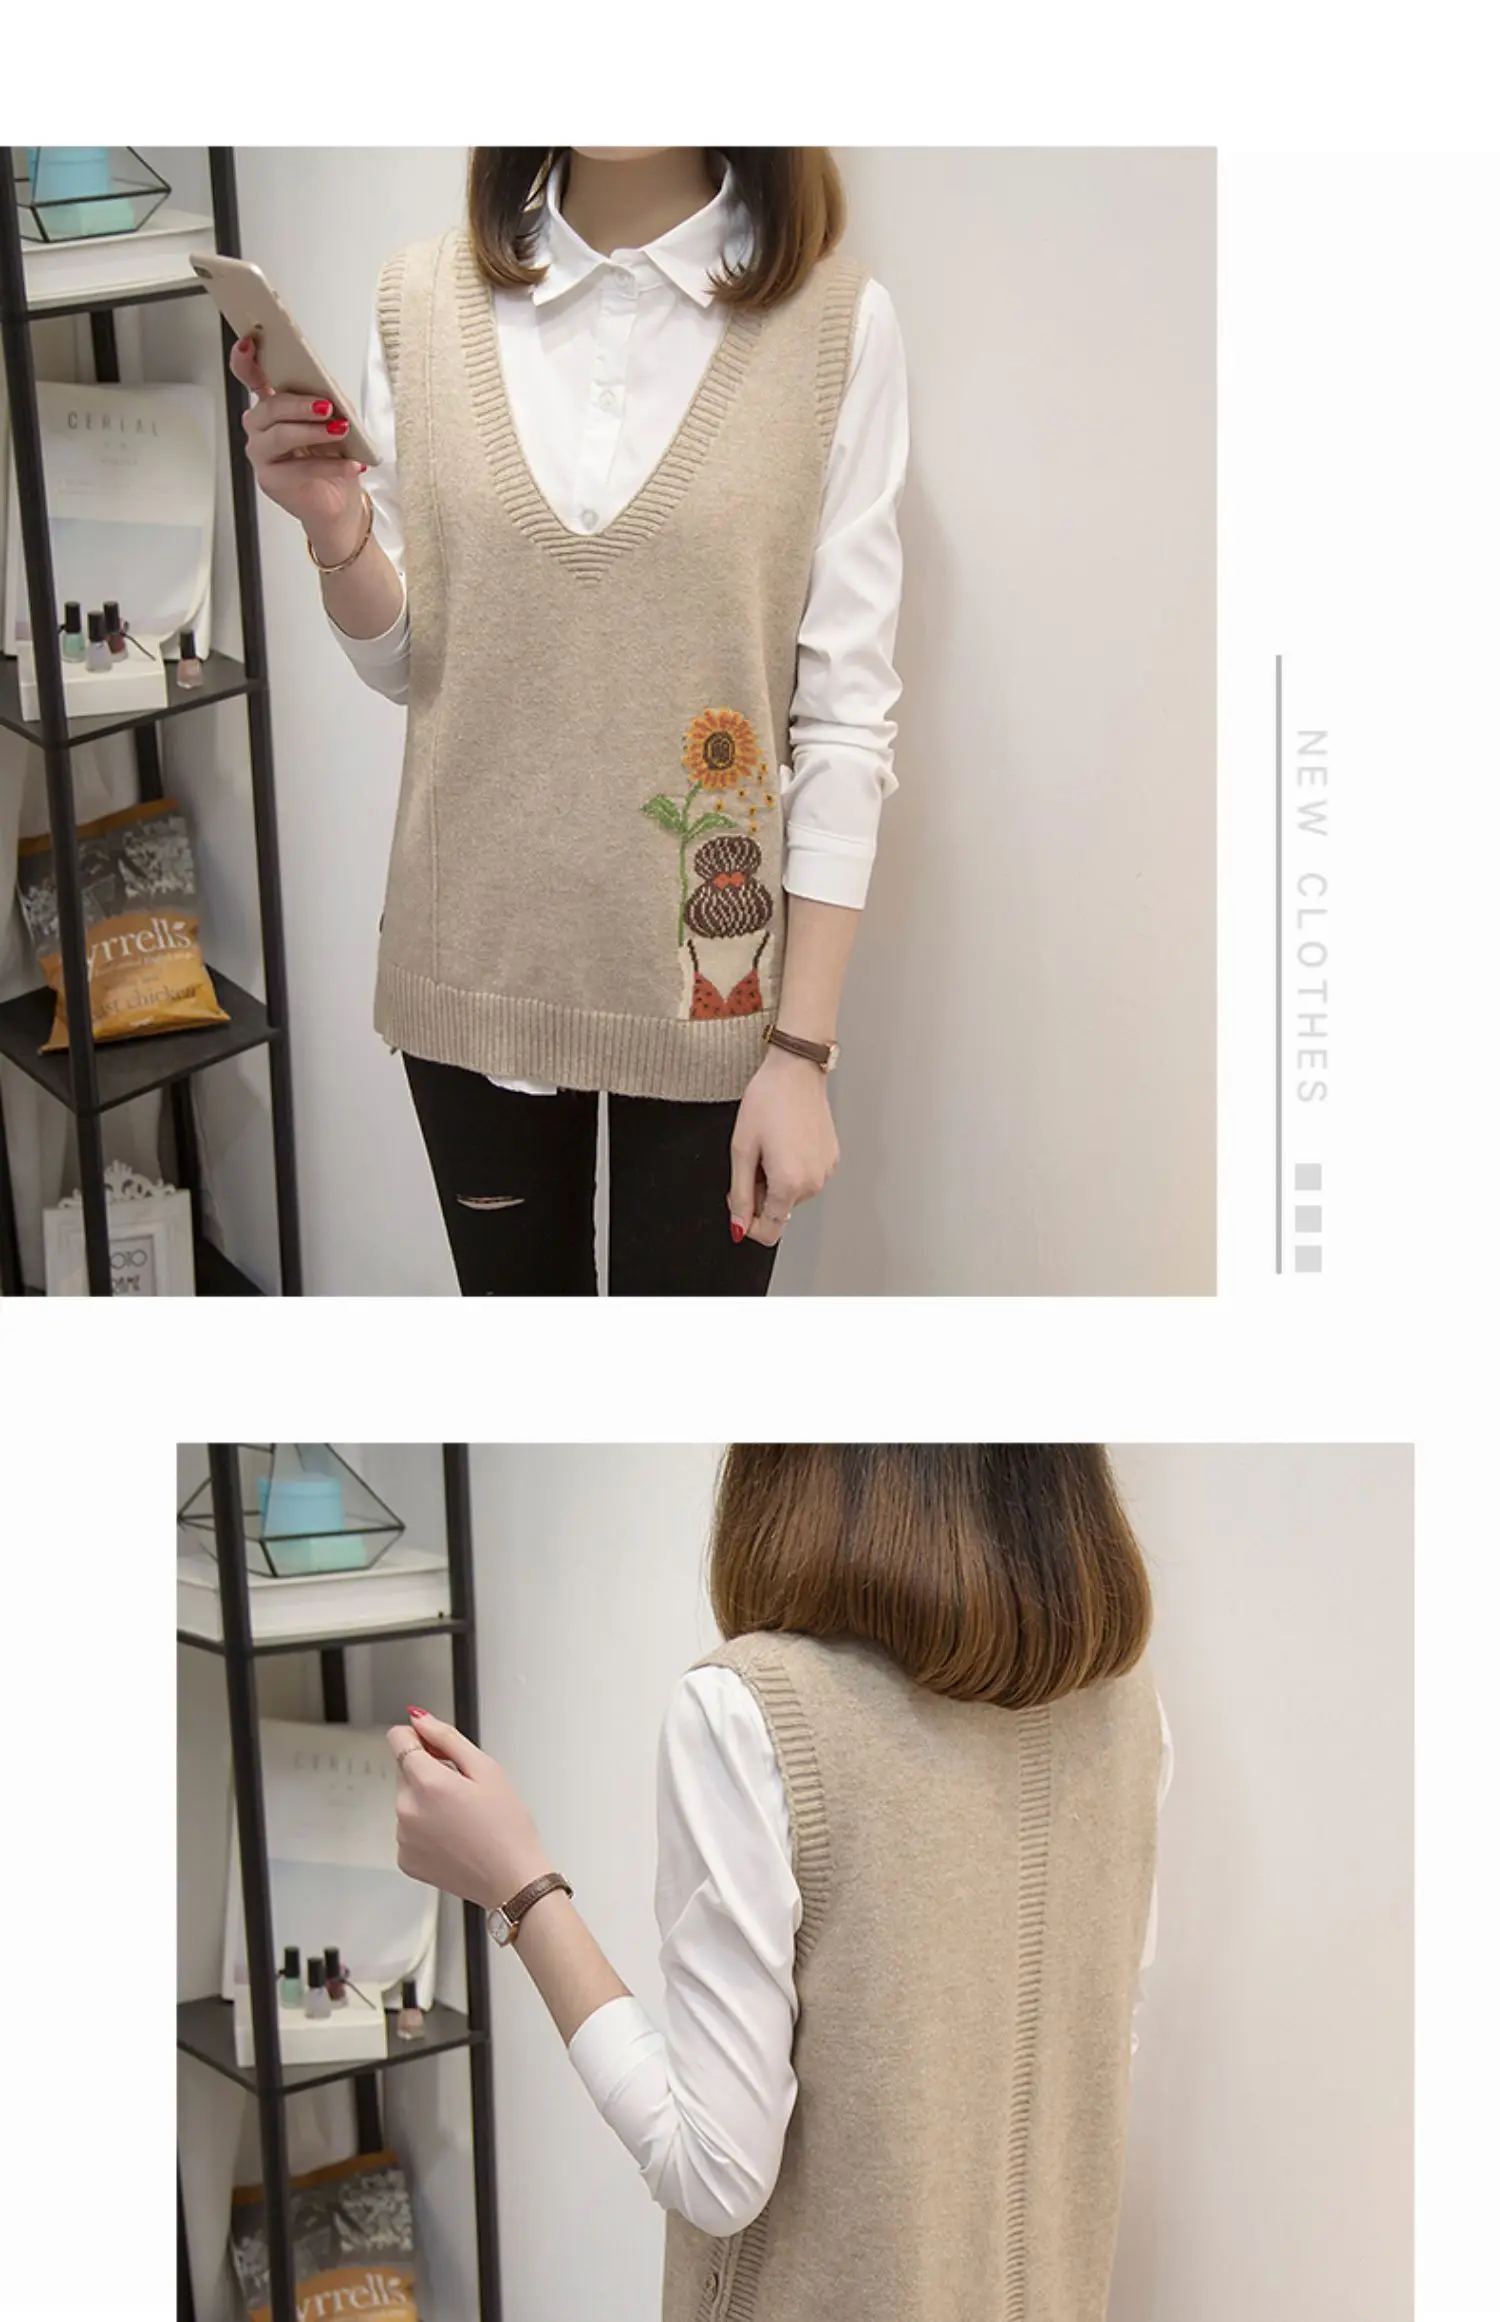 Новая Корейская вязаная рубашка с v-образным вырезом, жилет, жилет, свитер